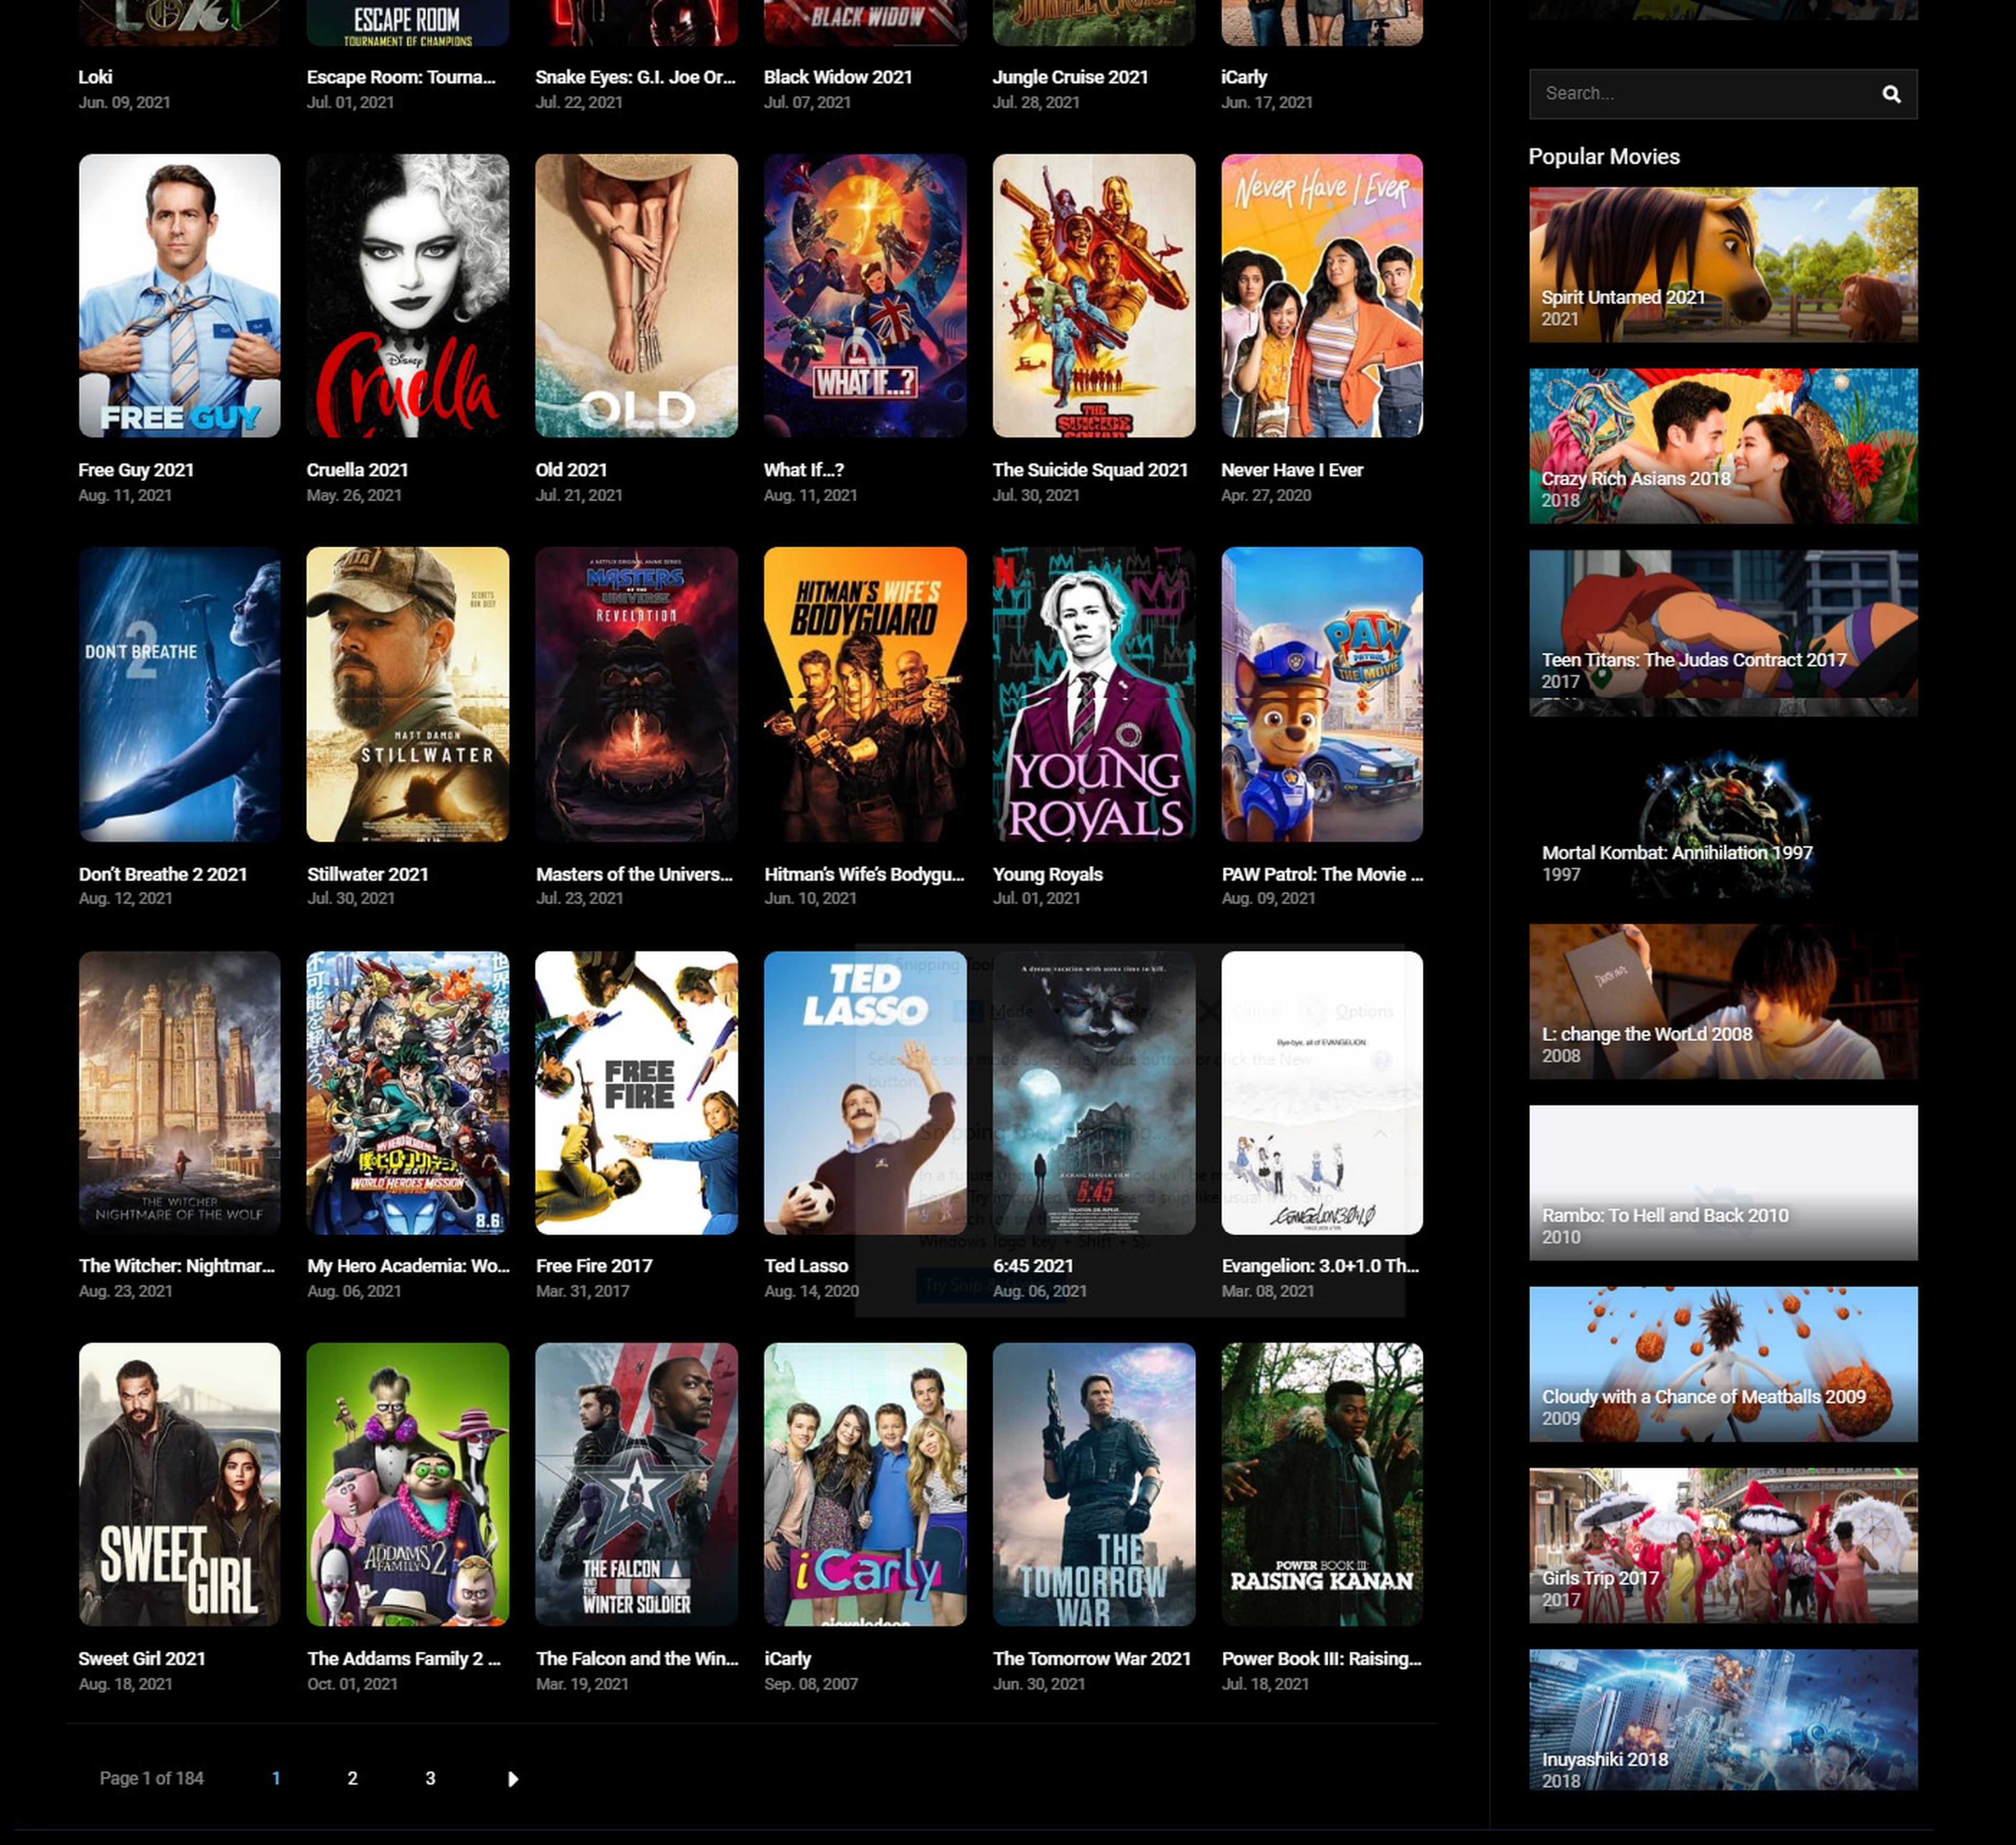 competirá con Netflix: ofrecerá películas y series gratis